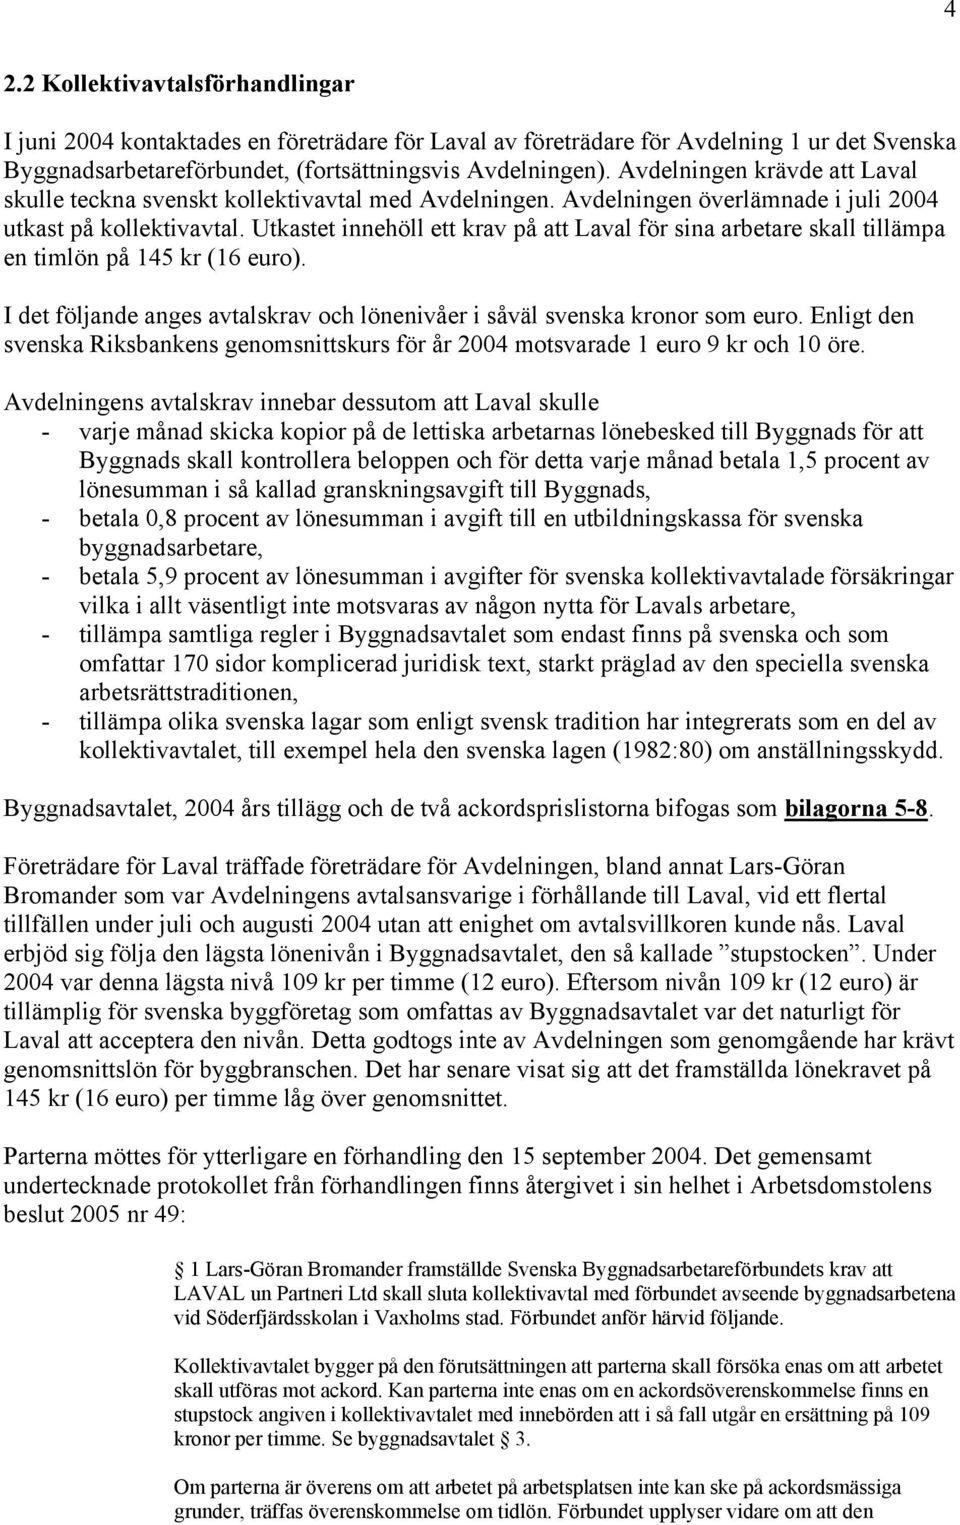 Utkastet innehöll ett krav på att Laval för sina arbetare skall tillämpa en timlön på 145 kr (16 euro). I det följande anges avtalskrav och lönenivåer i såväl svenska kronor som euro.